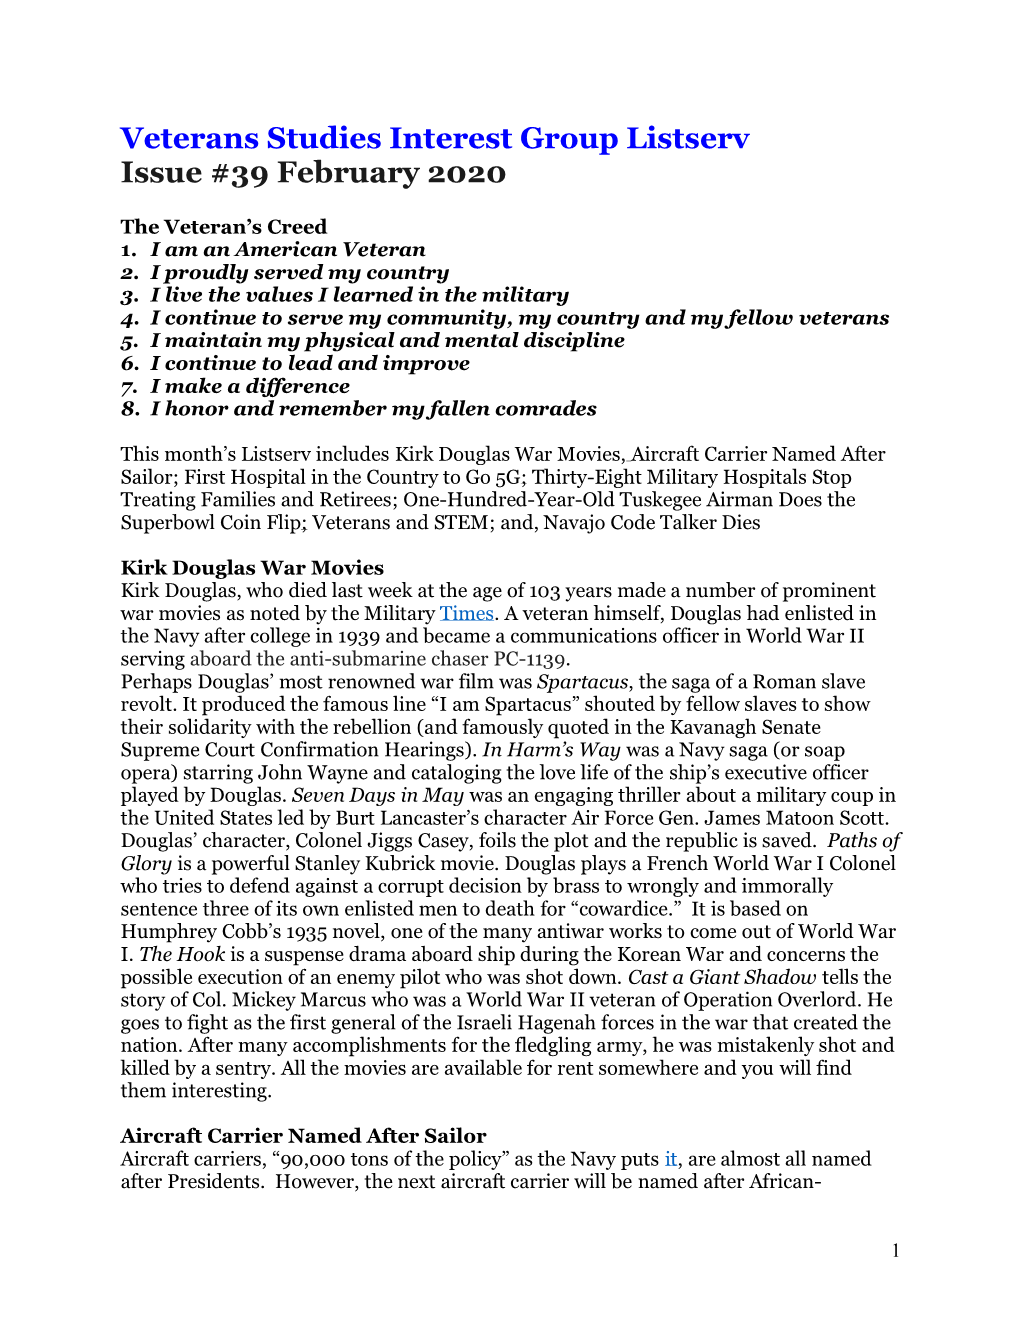 Veterans Studies Interest Group Listserv Issue #39 February 2020